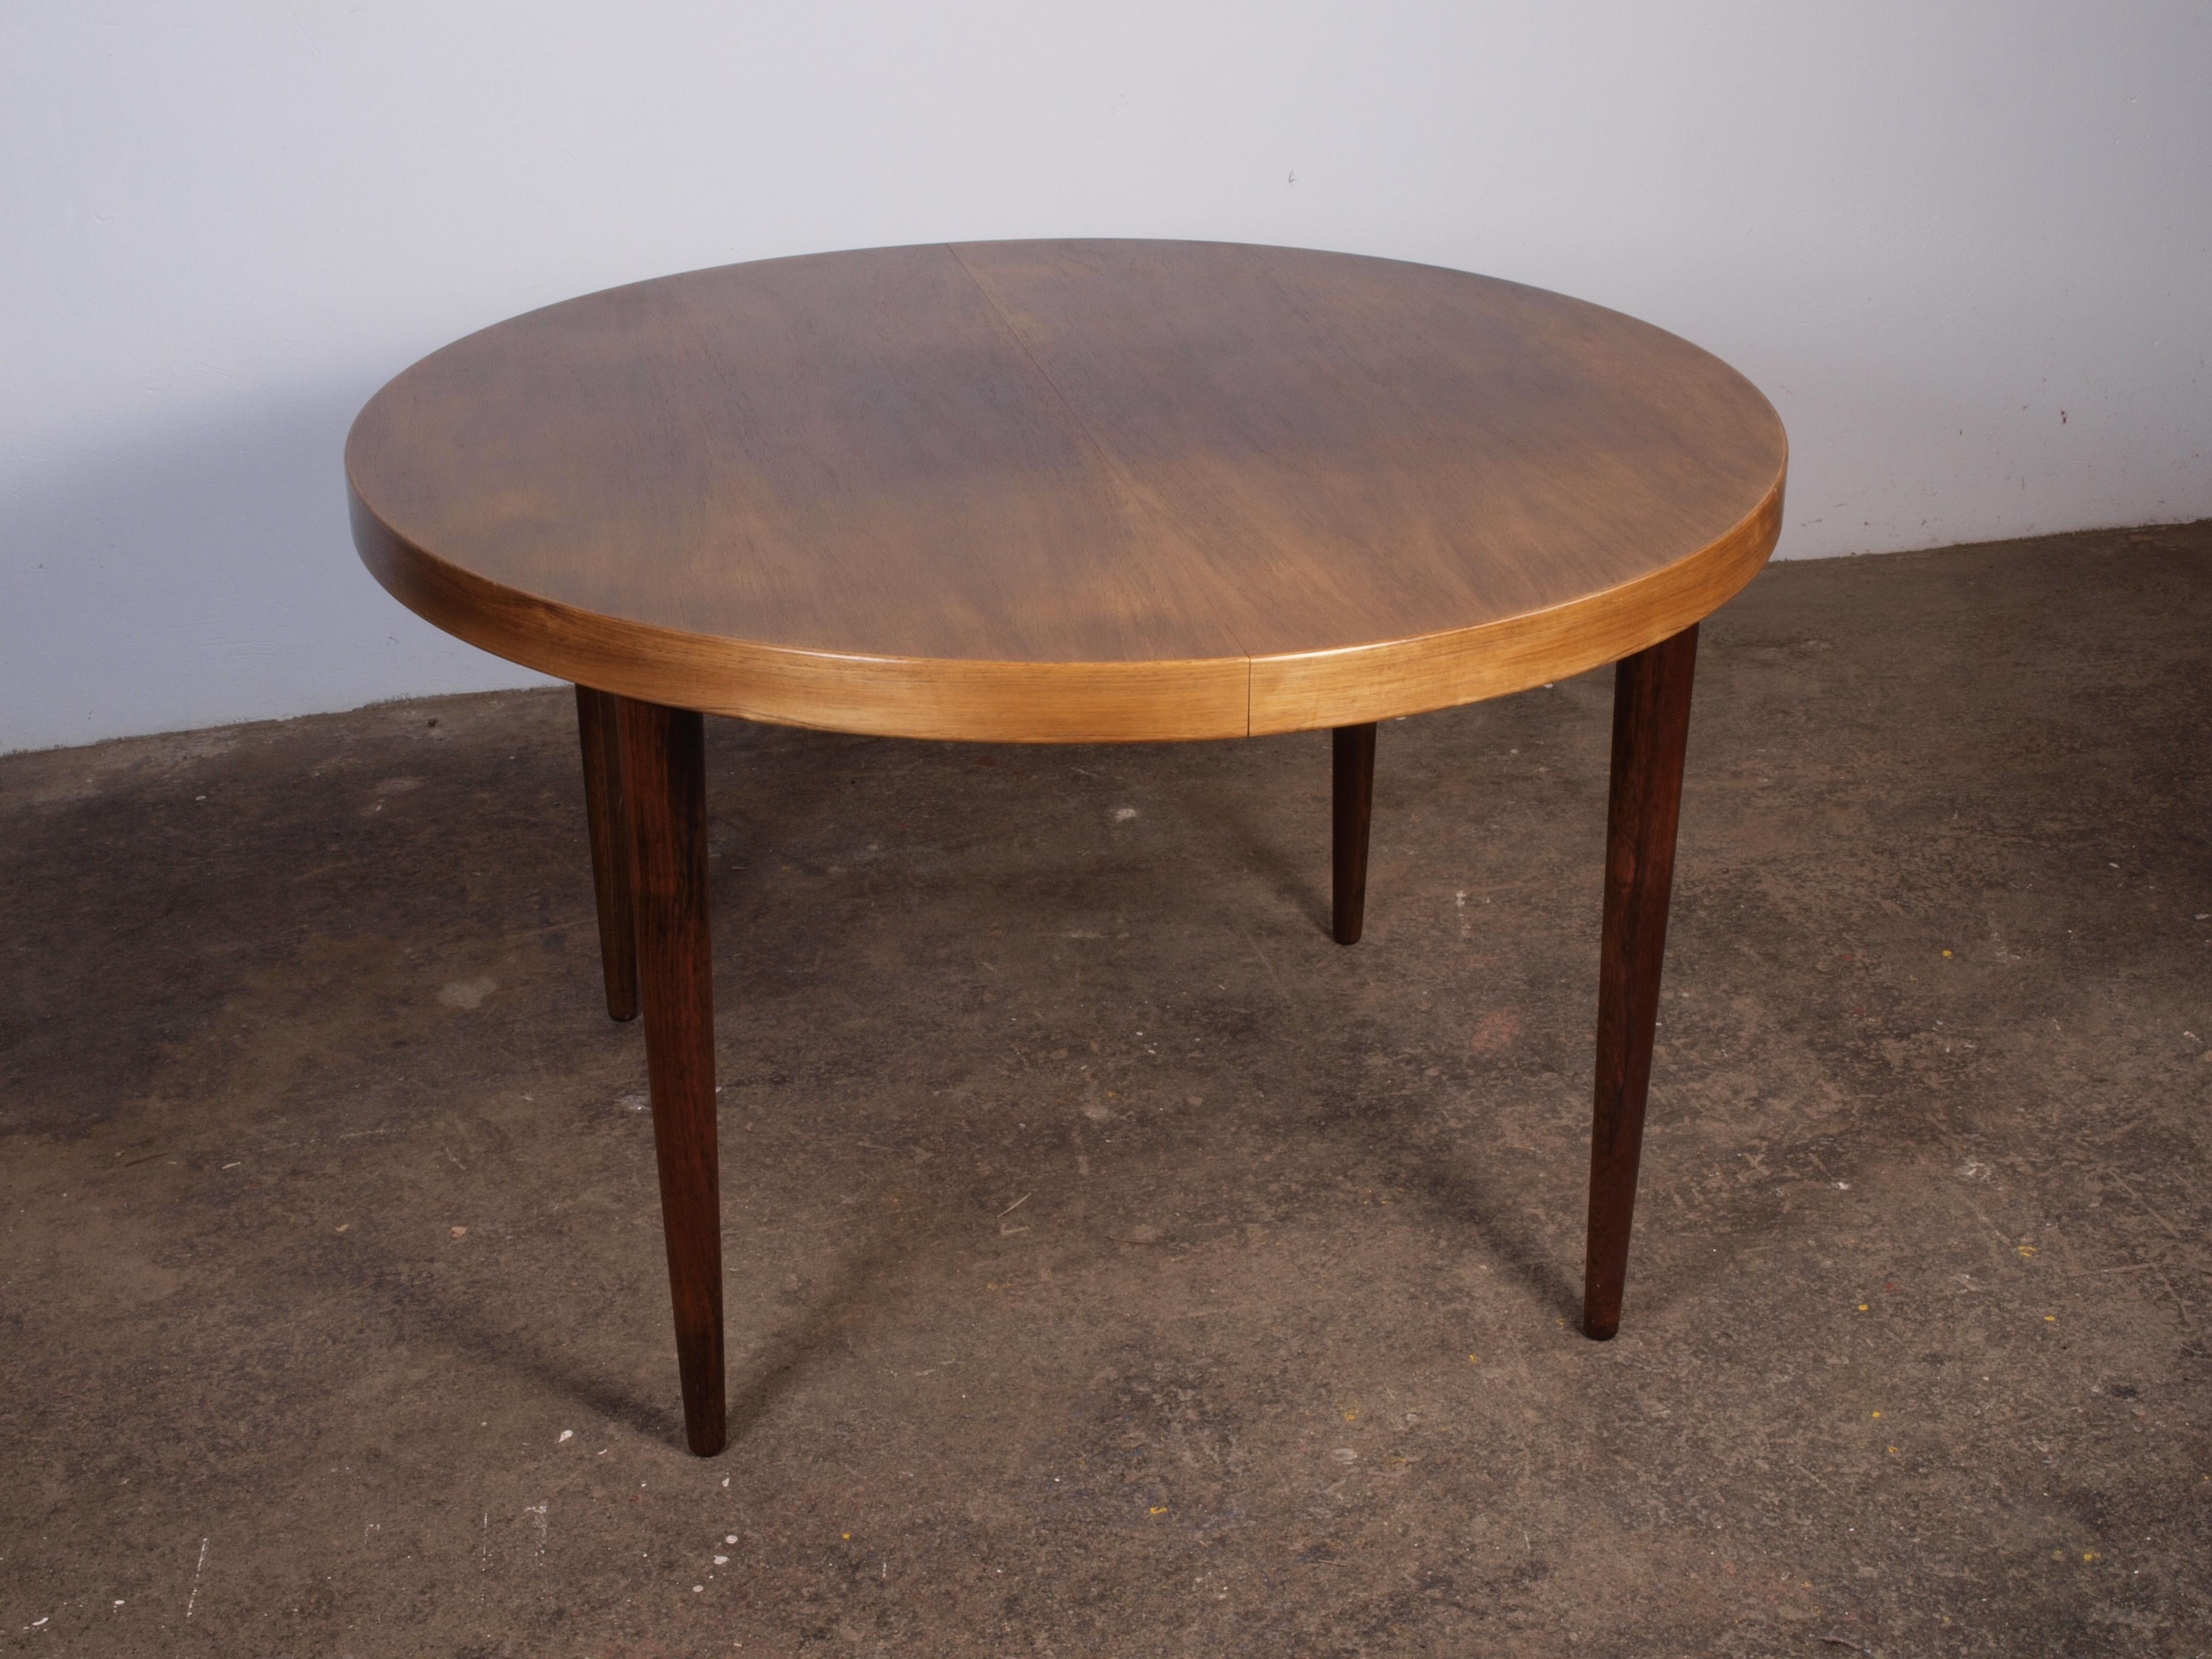 Gepflegter runder Palisander-Esstisch mit Ausziehplatten, der dem Architekten Kai Kristiansen zugeschrieben wird. Dieser seltene Holztisch wurde in den 1960er Jahren hergestellt und befindet sich in einem ausgezeichneten Zustand, ohne erkennbare